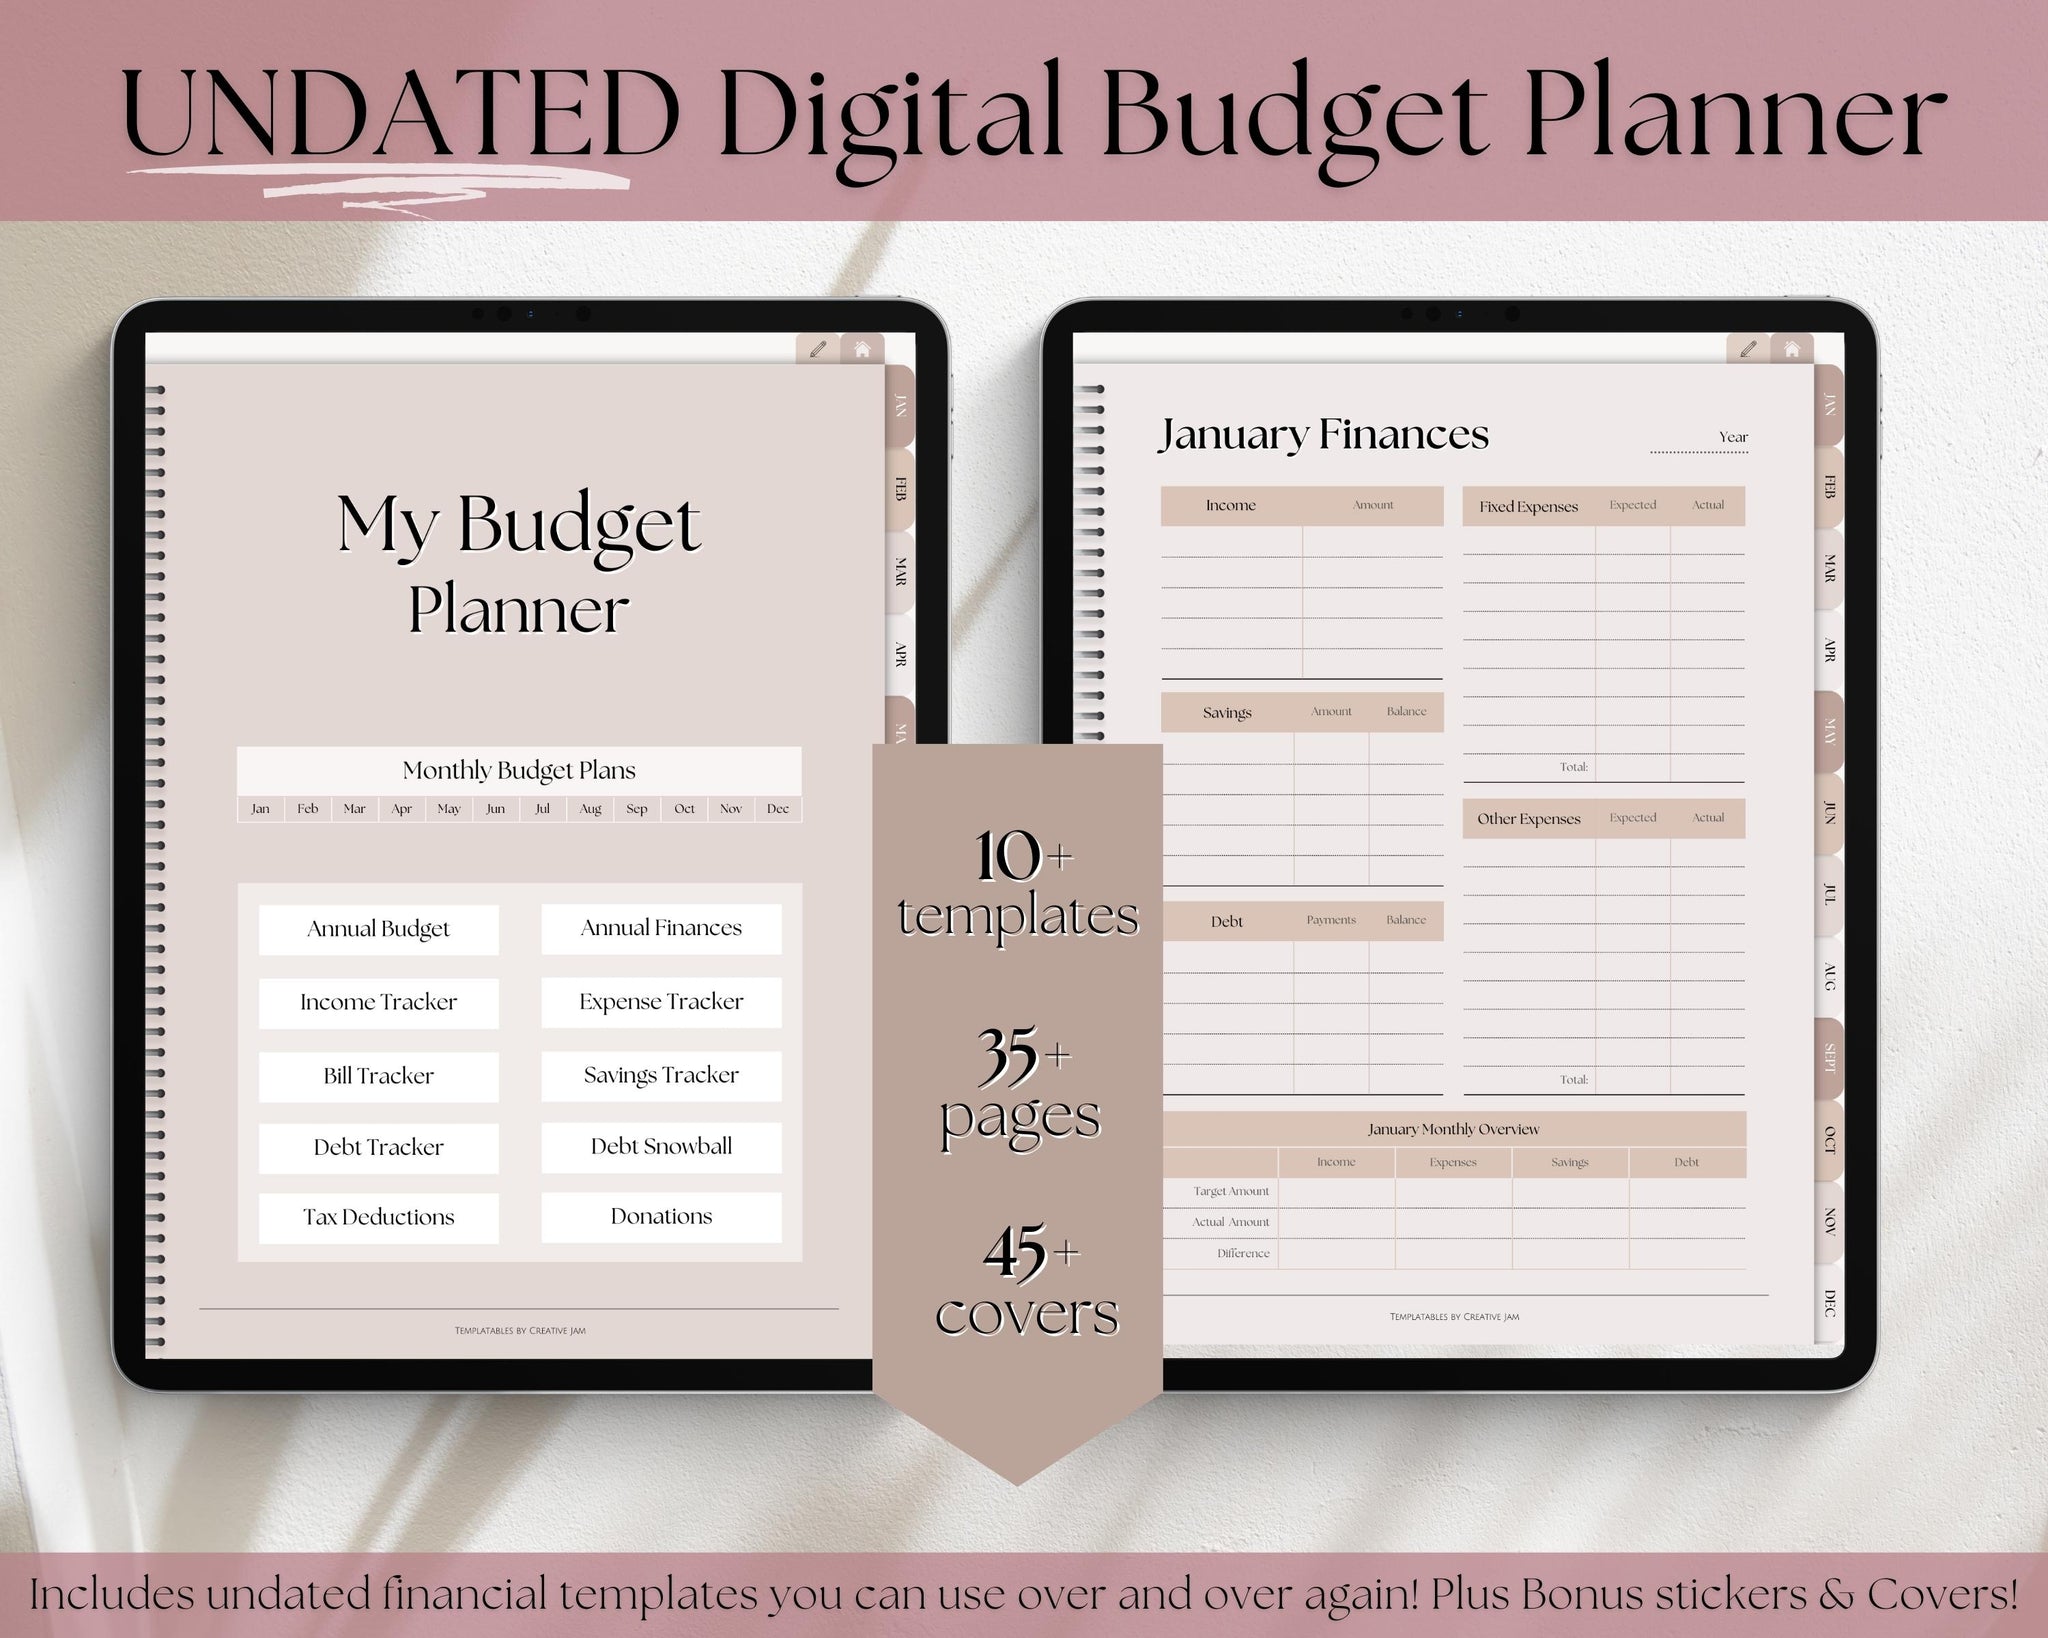 Undated Digital Budget Planner